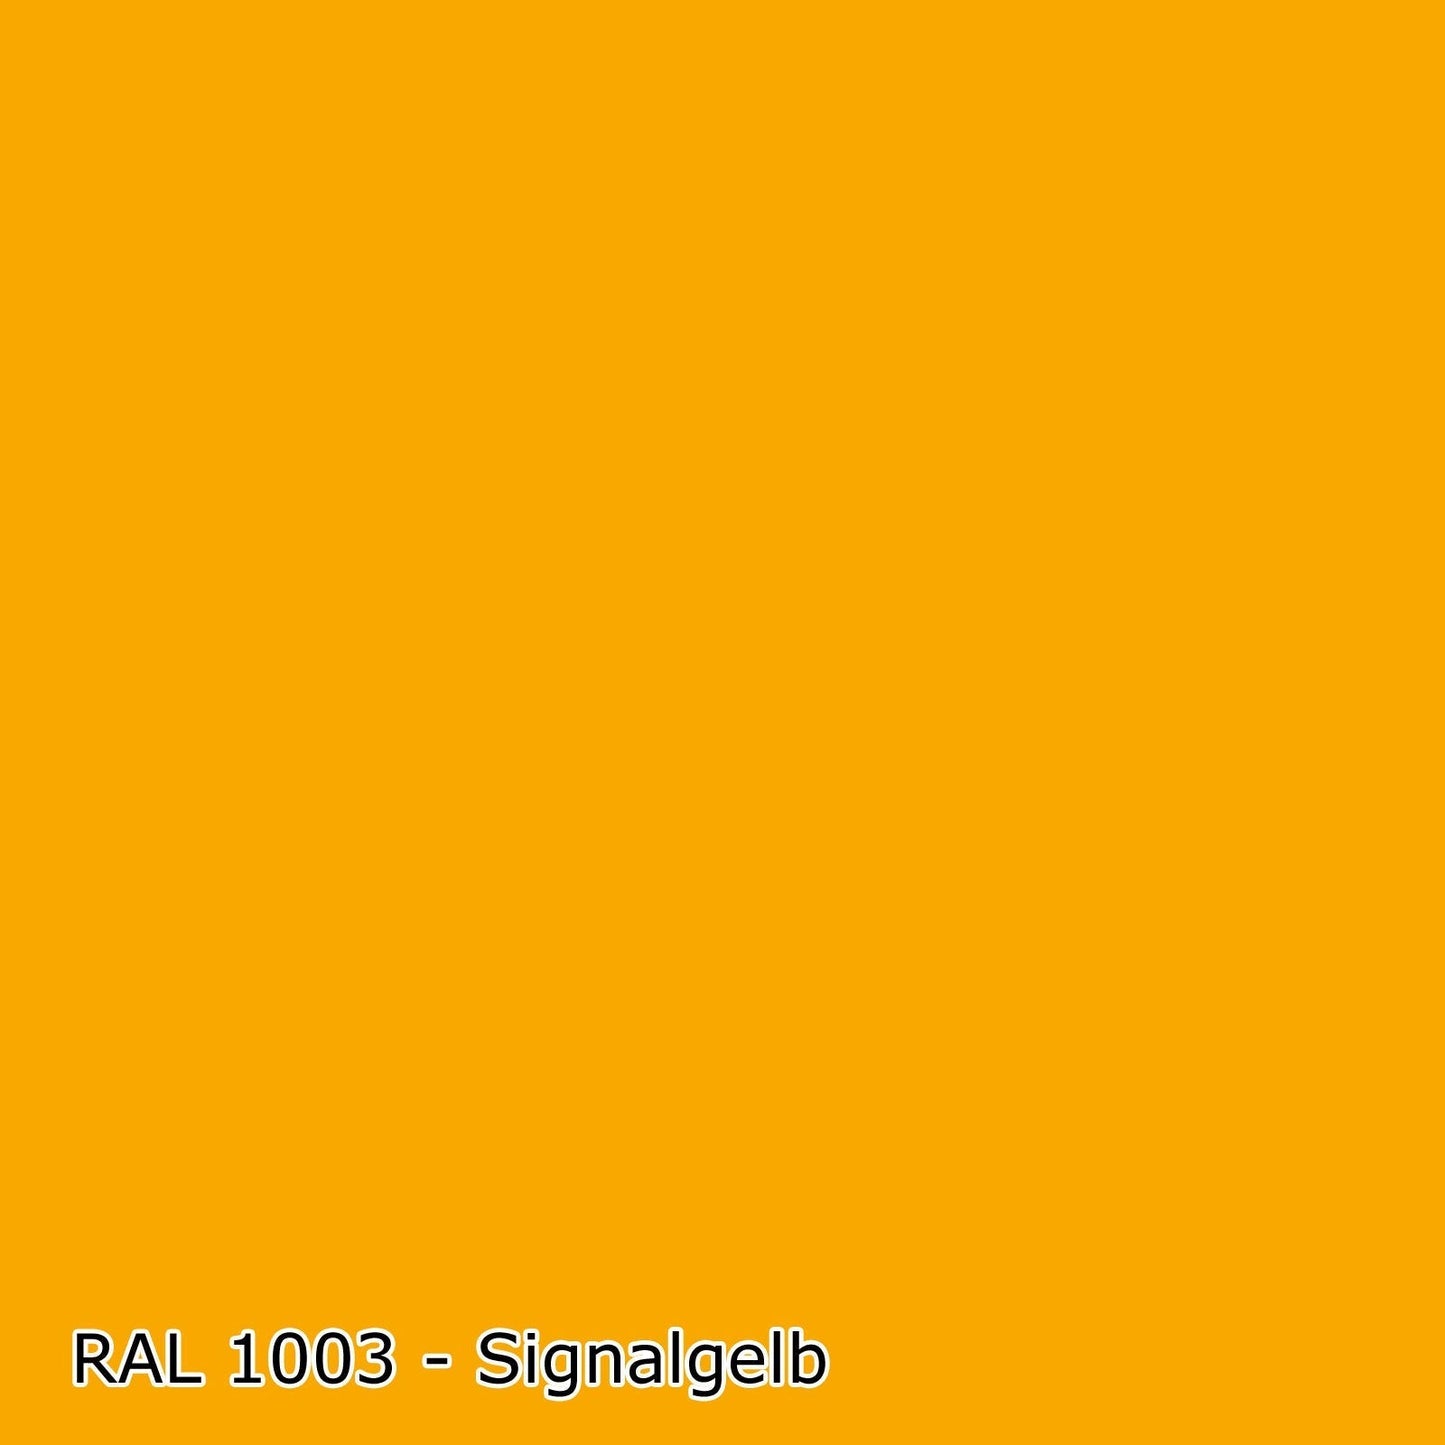 1 L Buntlack auf Wasserbasis, RAL Farbwahl - MATT (RAL 1000 - 6007)